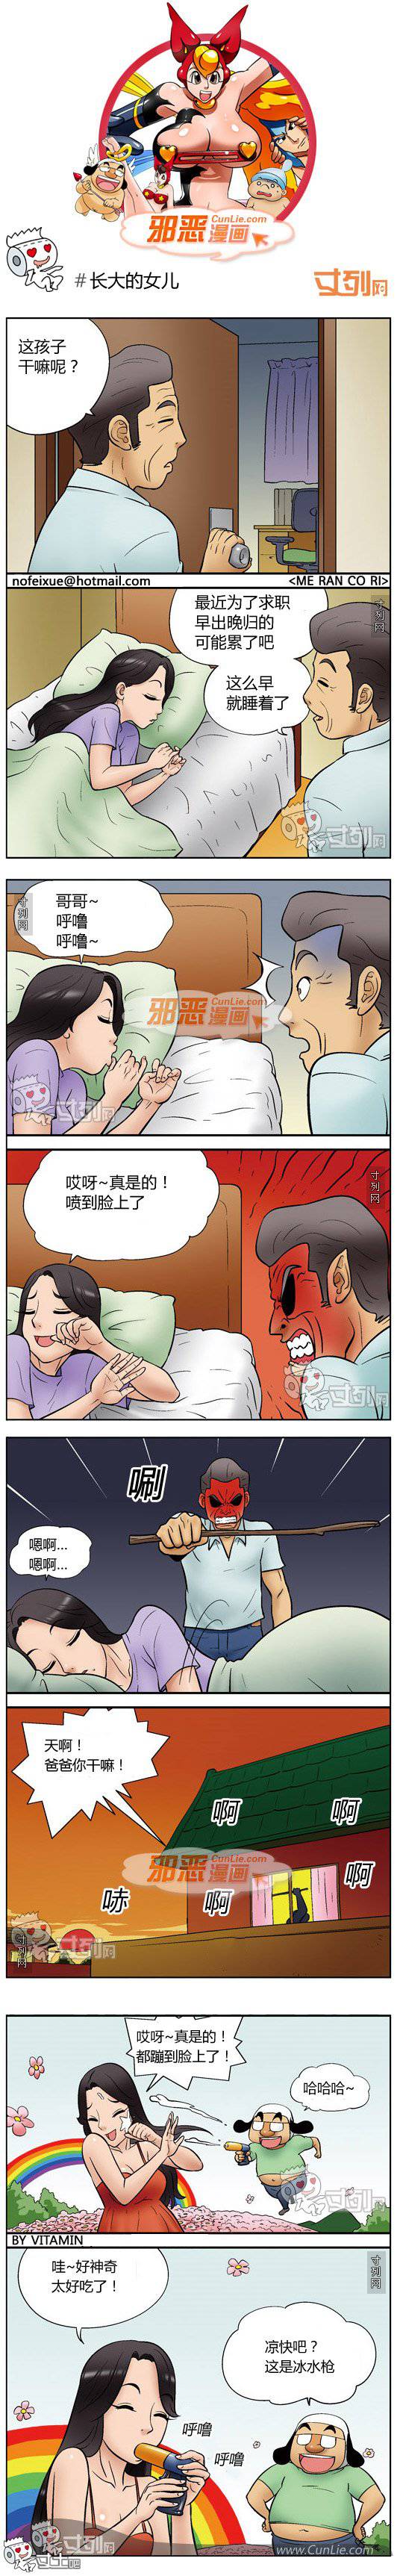 邪恶漫画爆笑囧图第209刊：意外